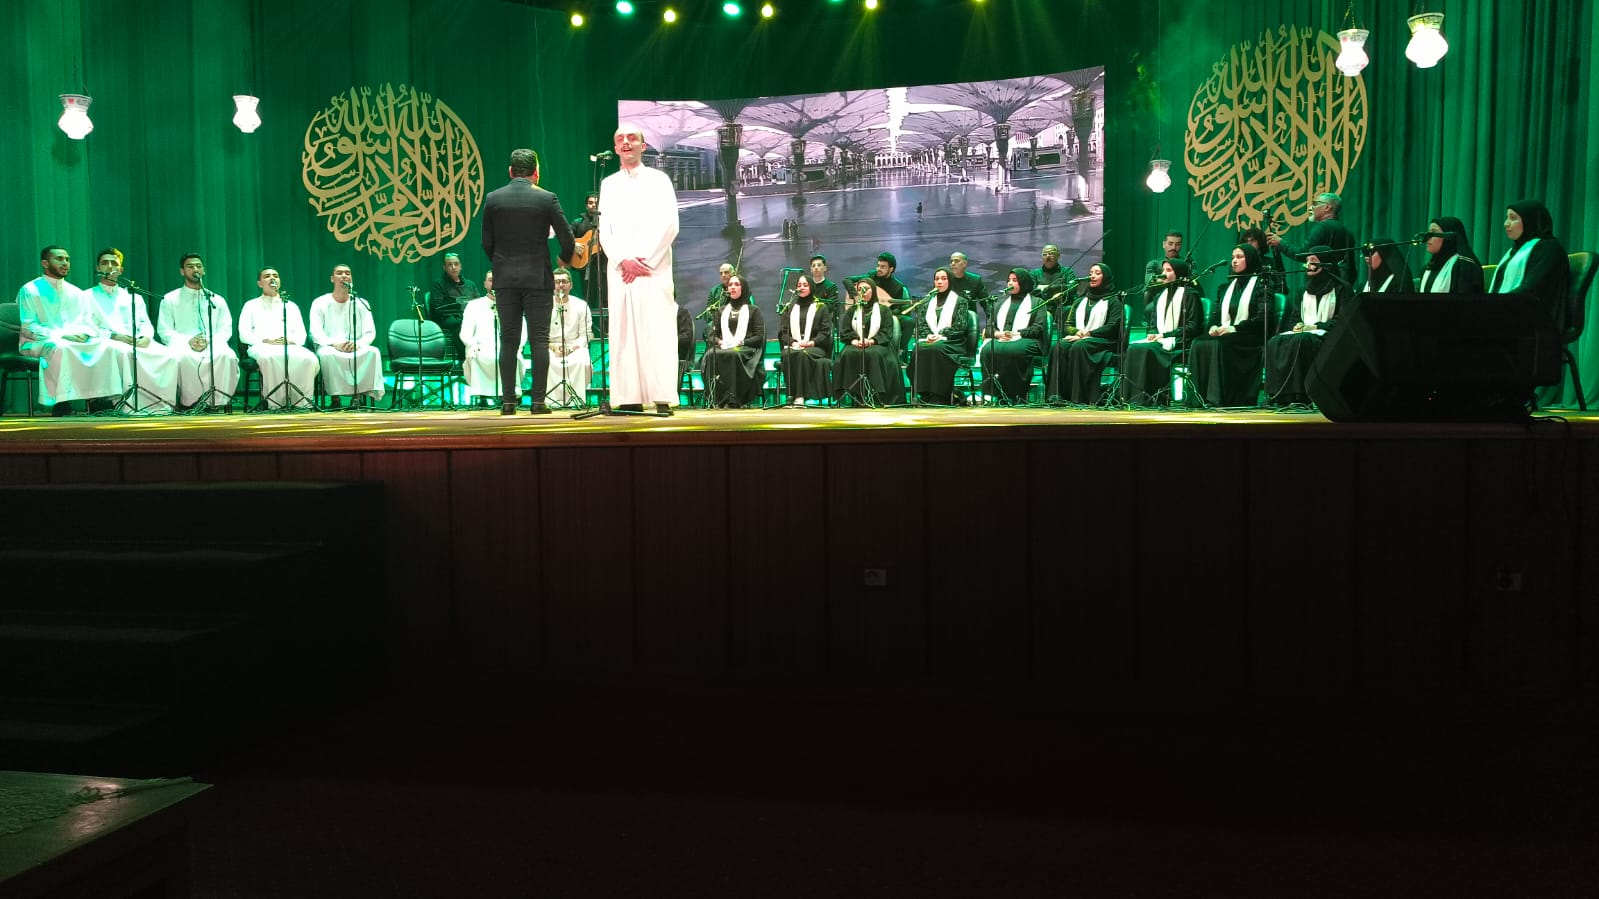 فرق الانشاد الديني تحتفل بذكرى الإسراء والمعراج في مسرح السامر بحضور تامر عبد المنعم (2)